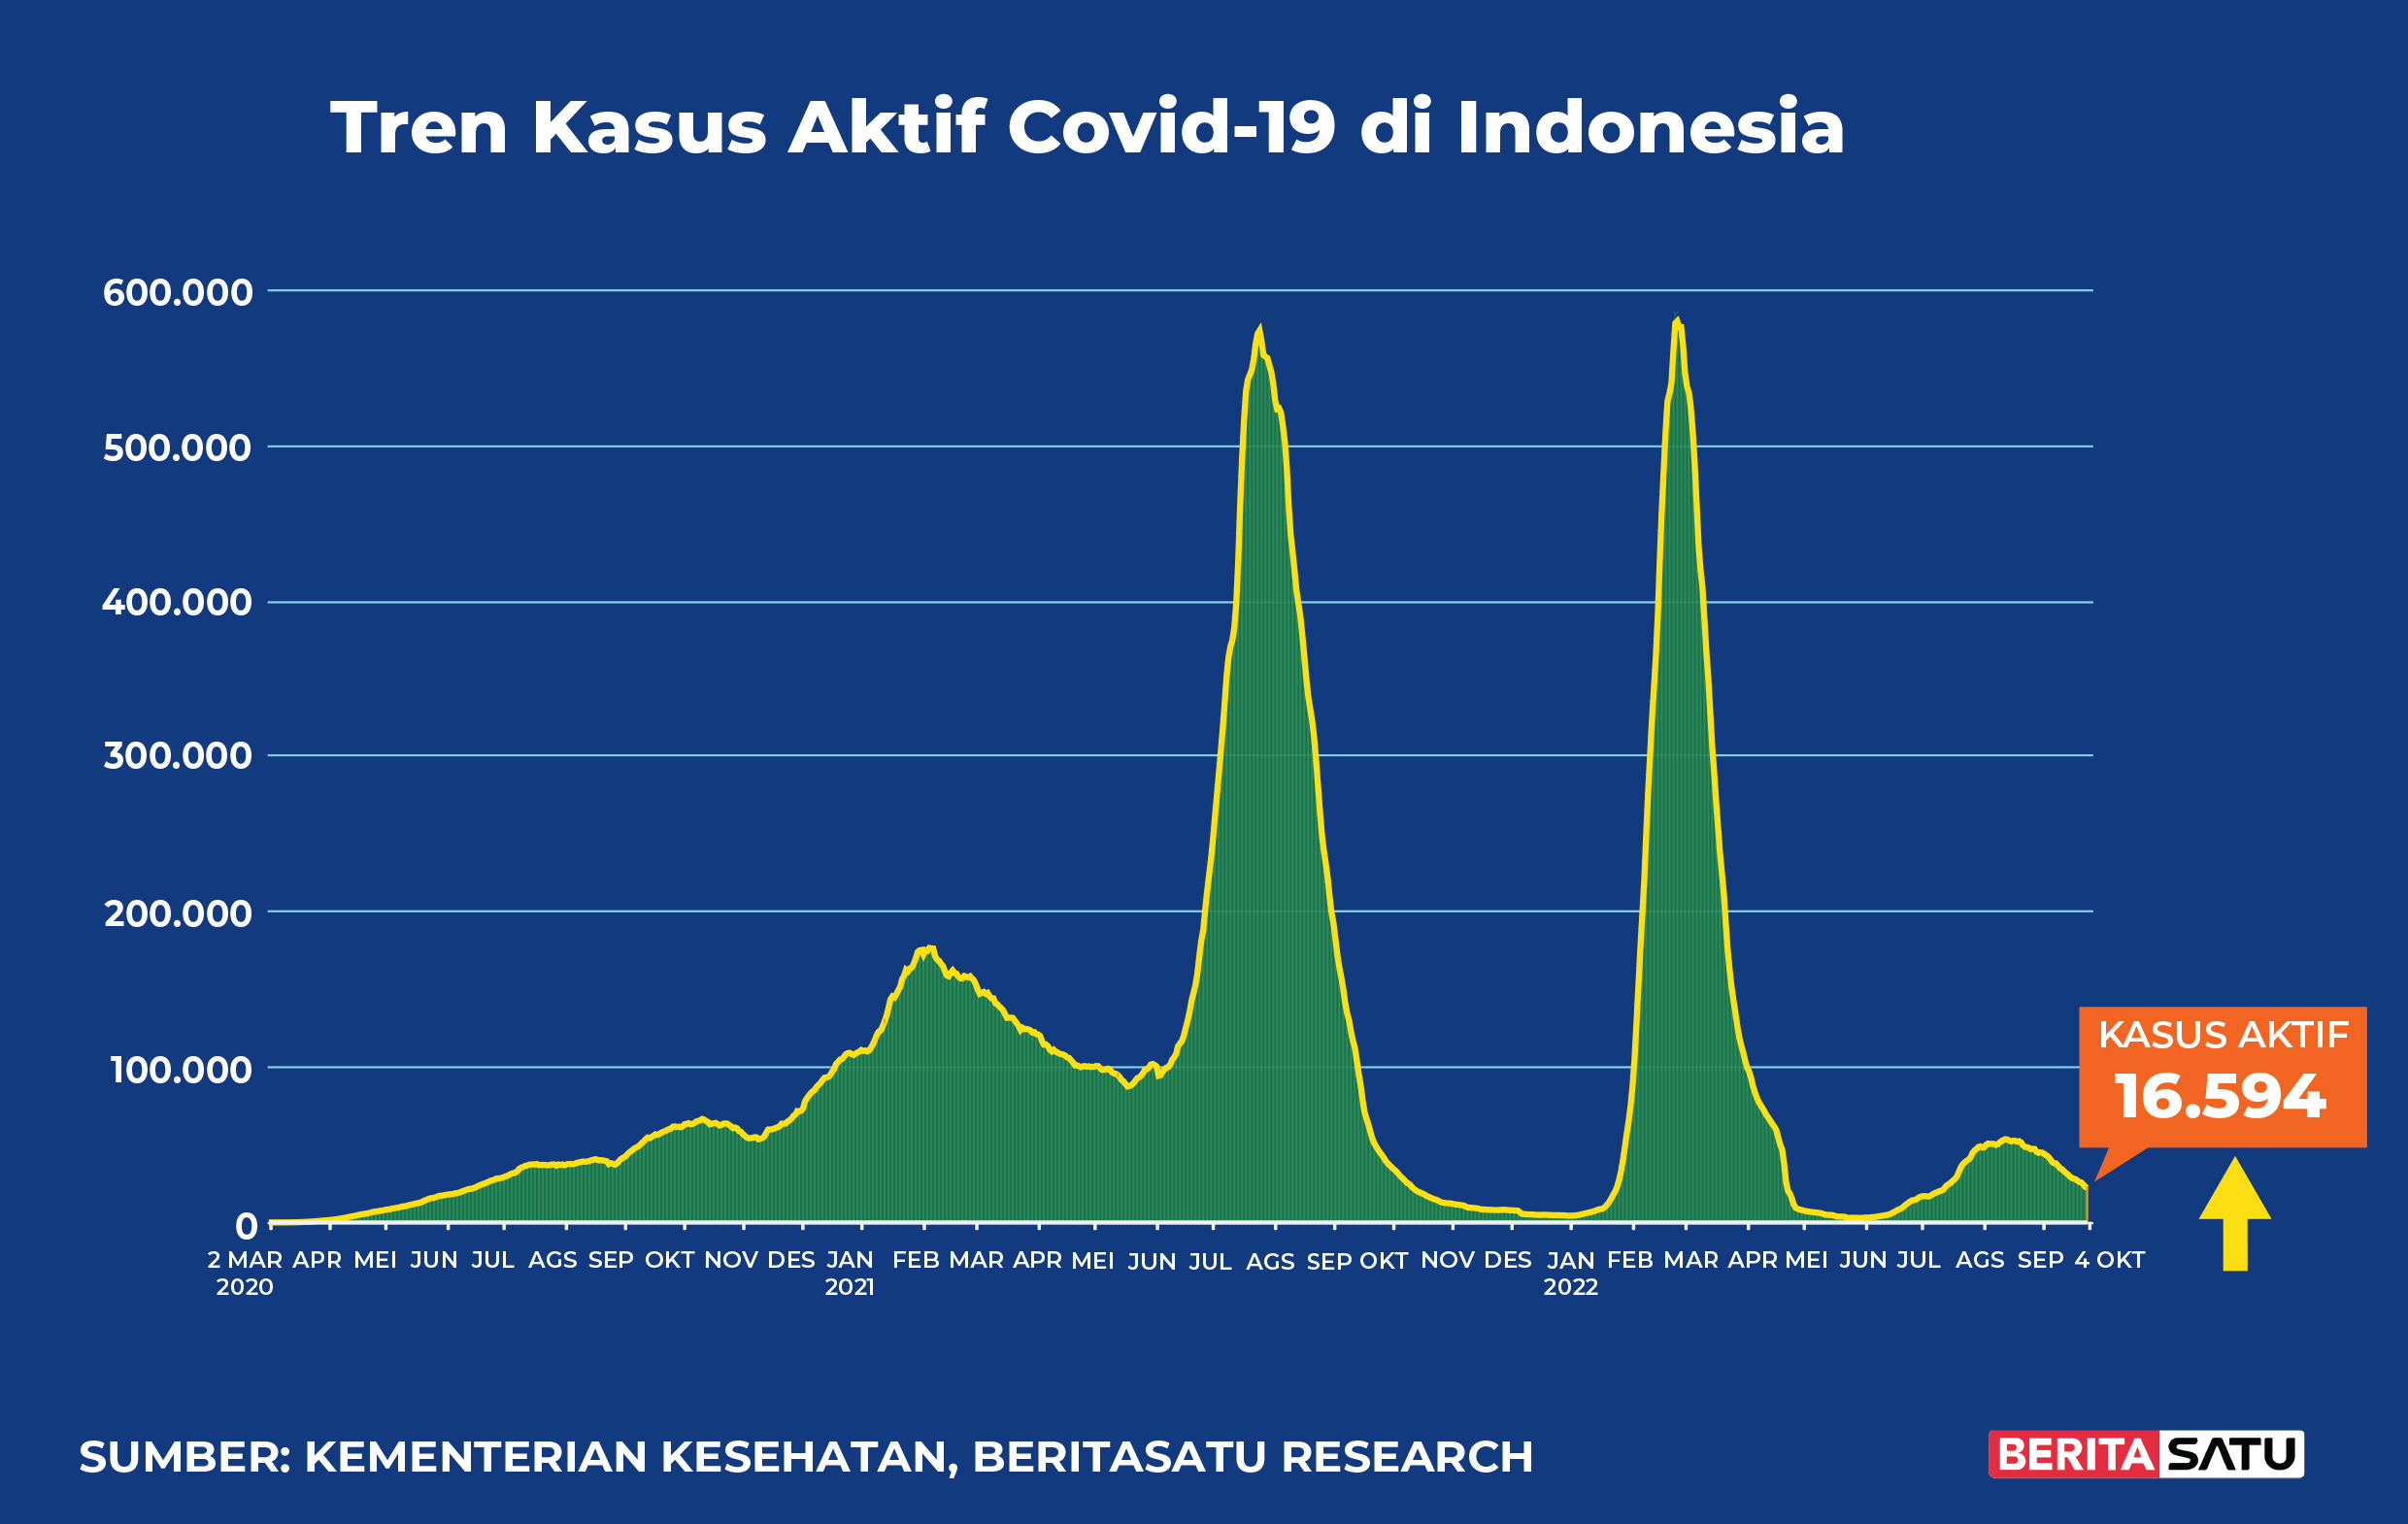 Kasus Aktif Covid-19 di Indonesia sampai 4 Oktober 2022